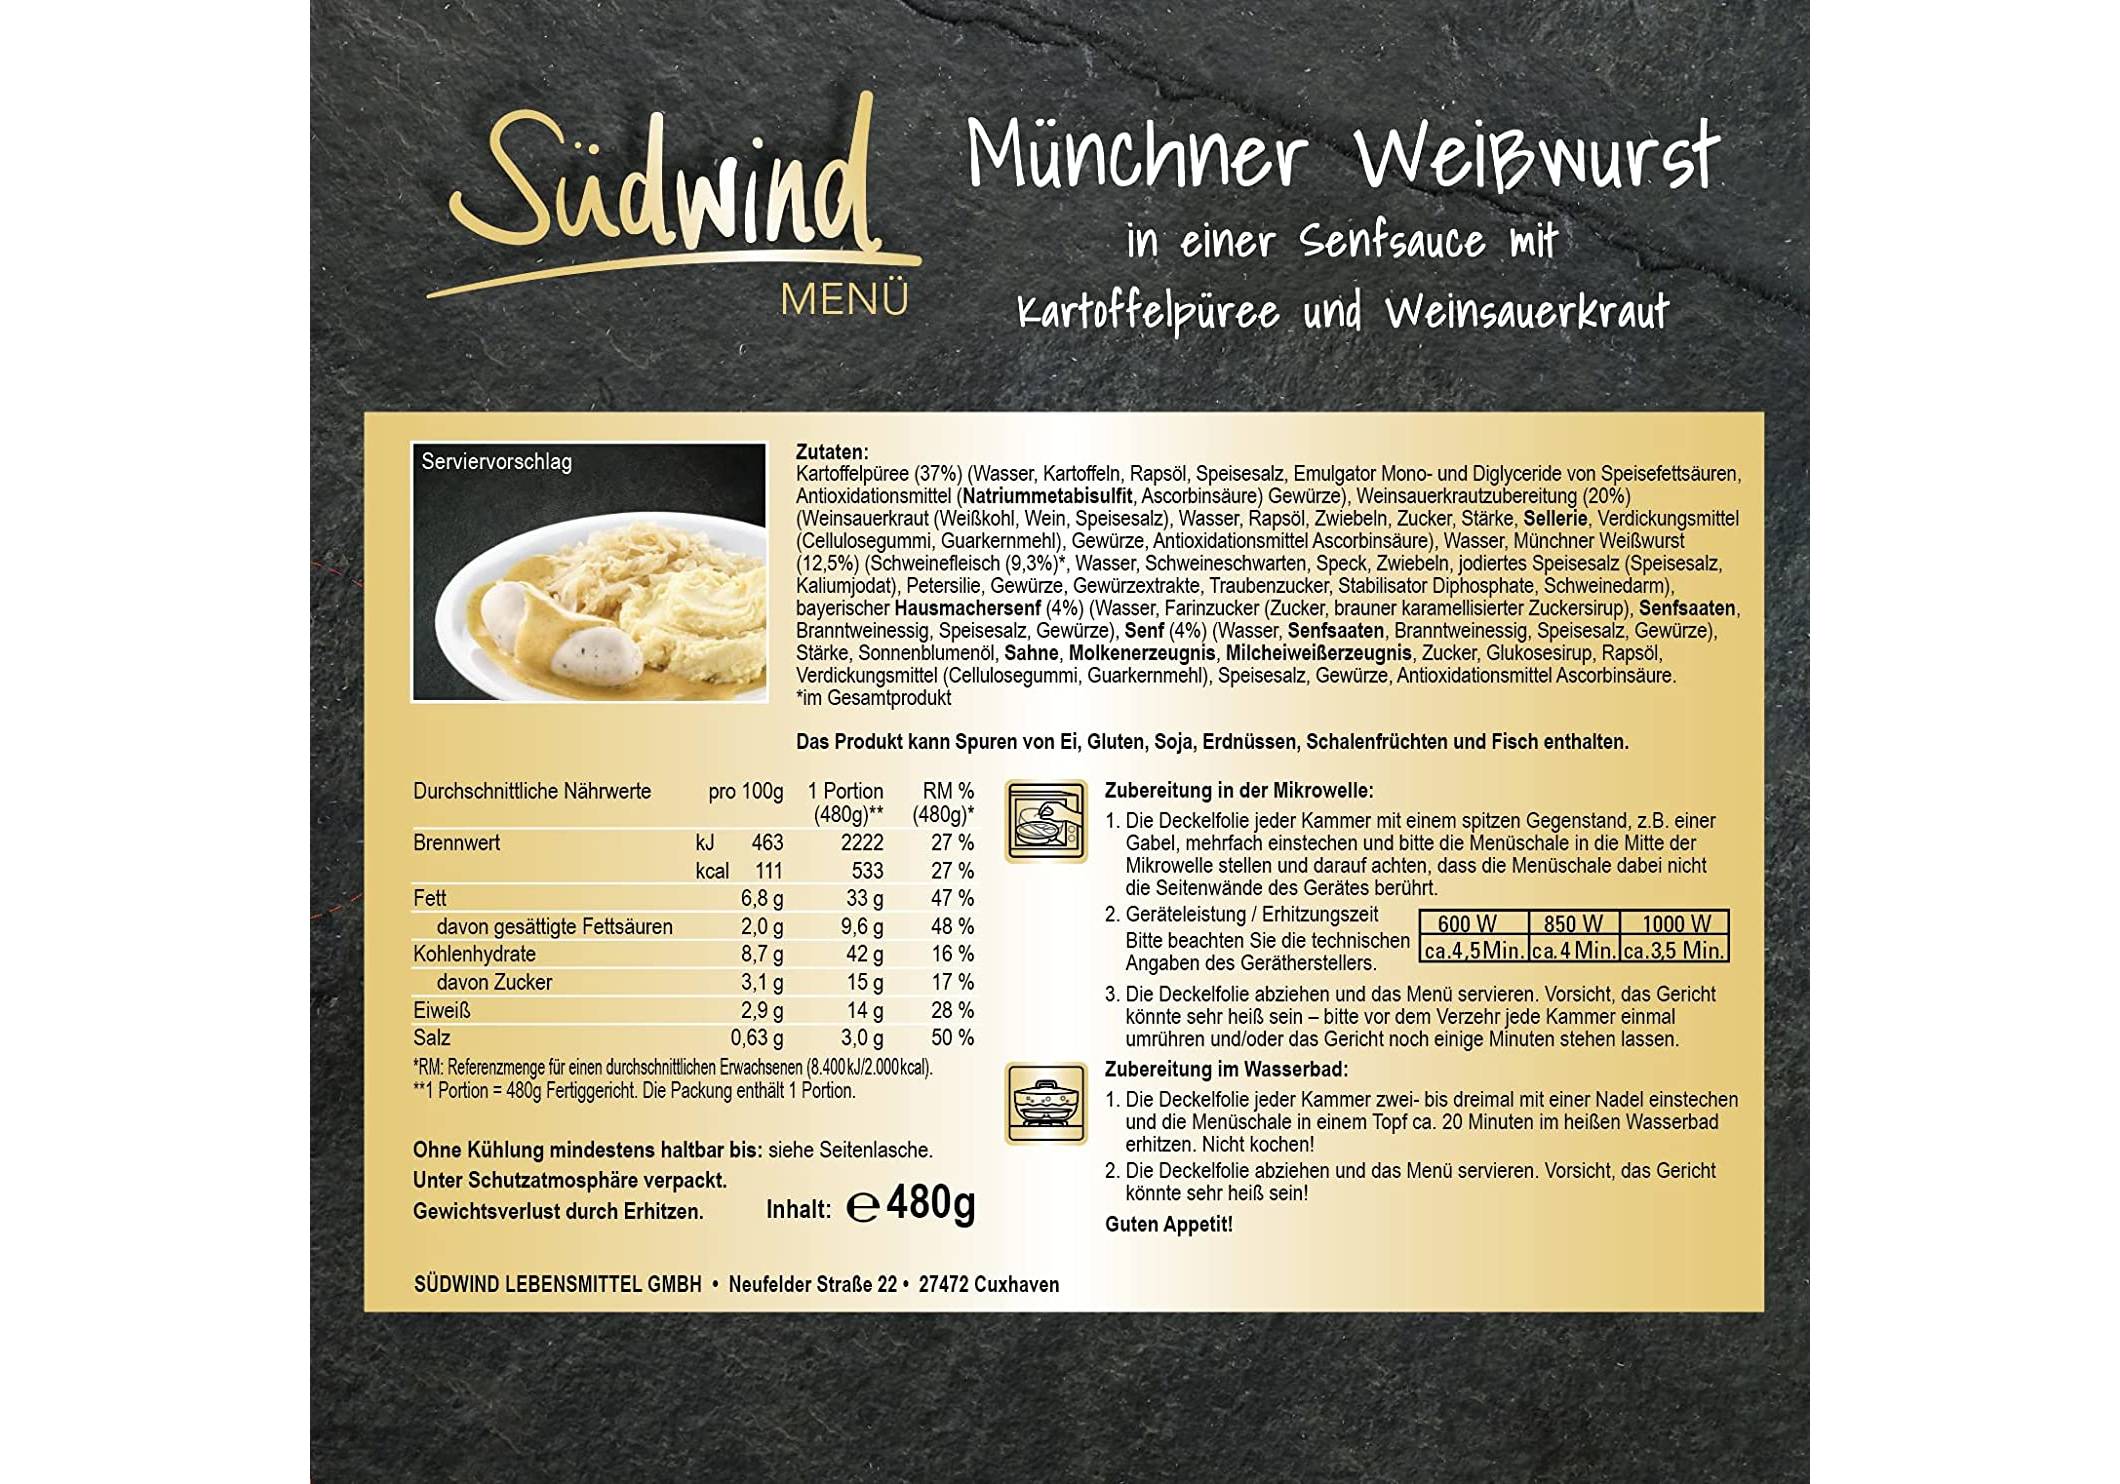 Lebensmittel & Getränke :: Fertiggerichte :: Münchner Weißwurst mit  Kartoffelpüree und Weinsauerkraut - 7er Pack (7 x 480g) - Fertiggerichte  für die Mikrowelle / Wasserbad - Südwind Lebensmittel -   - Ökologische Produkte online kaufen.